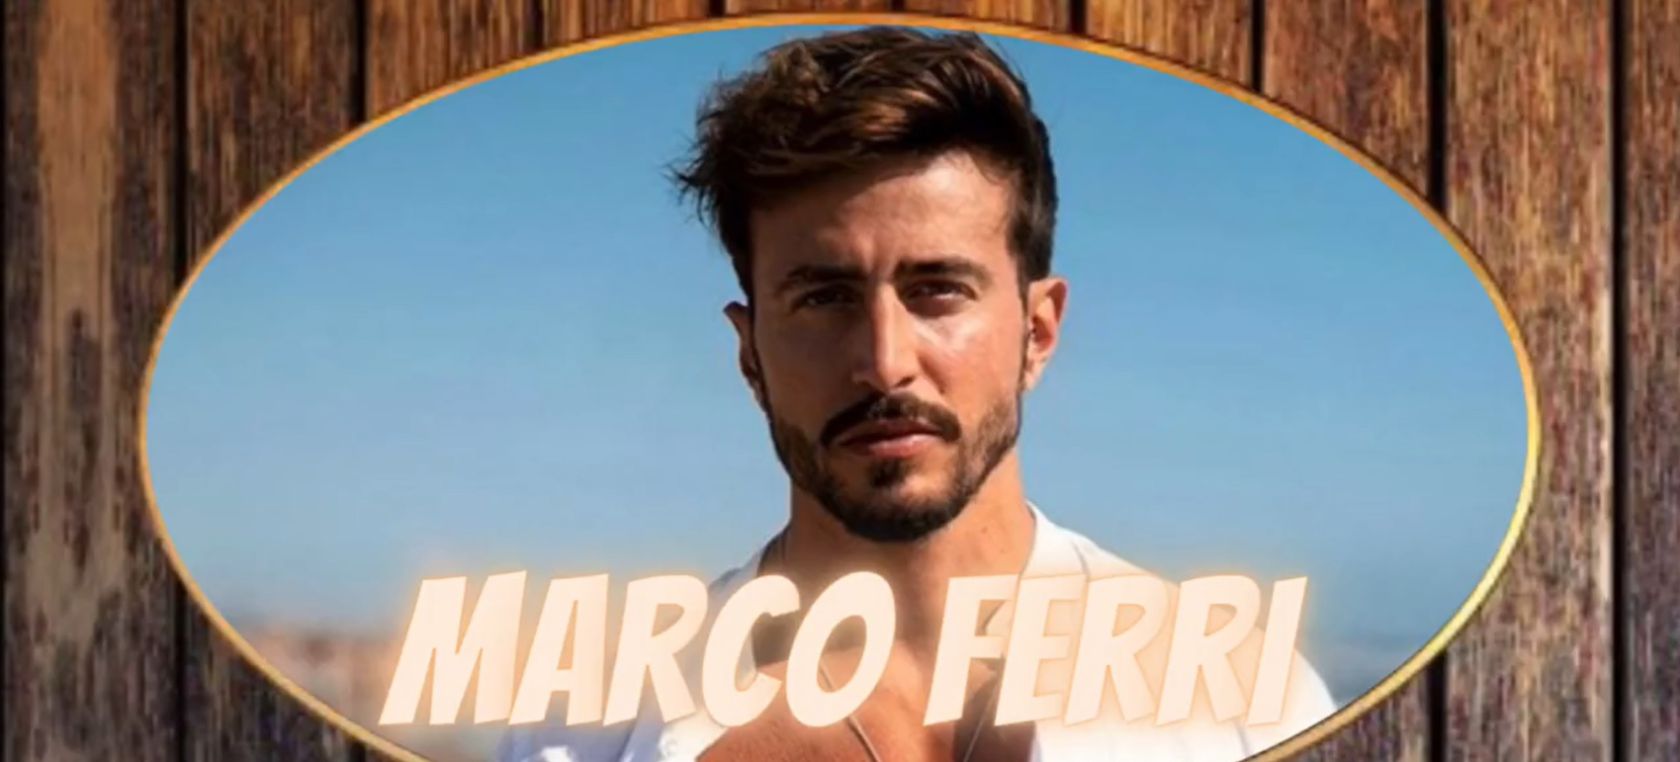 ¿Quién es Marco Ferri? Todo sobre el pasado del nuevo concursante de 'Pesadilla en el paraíso'